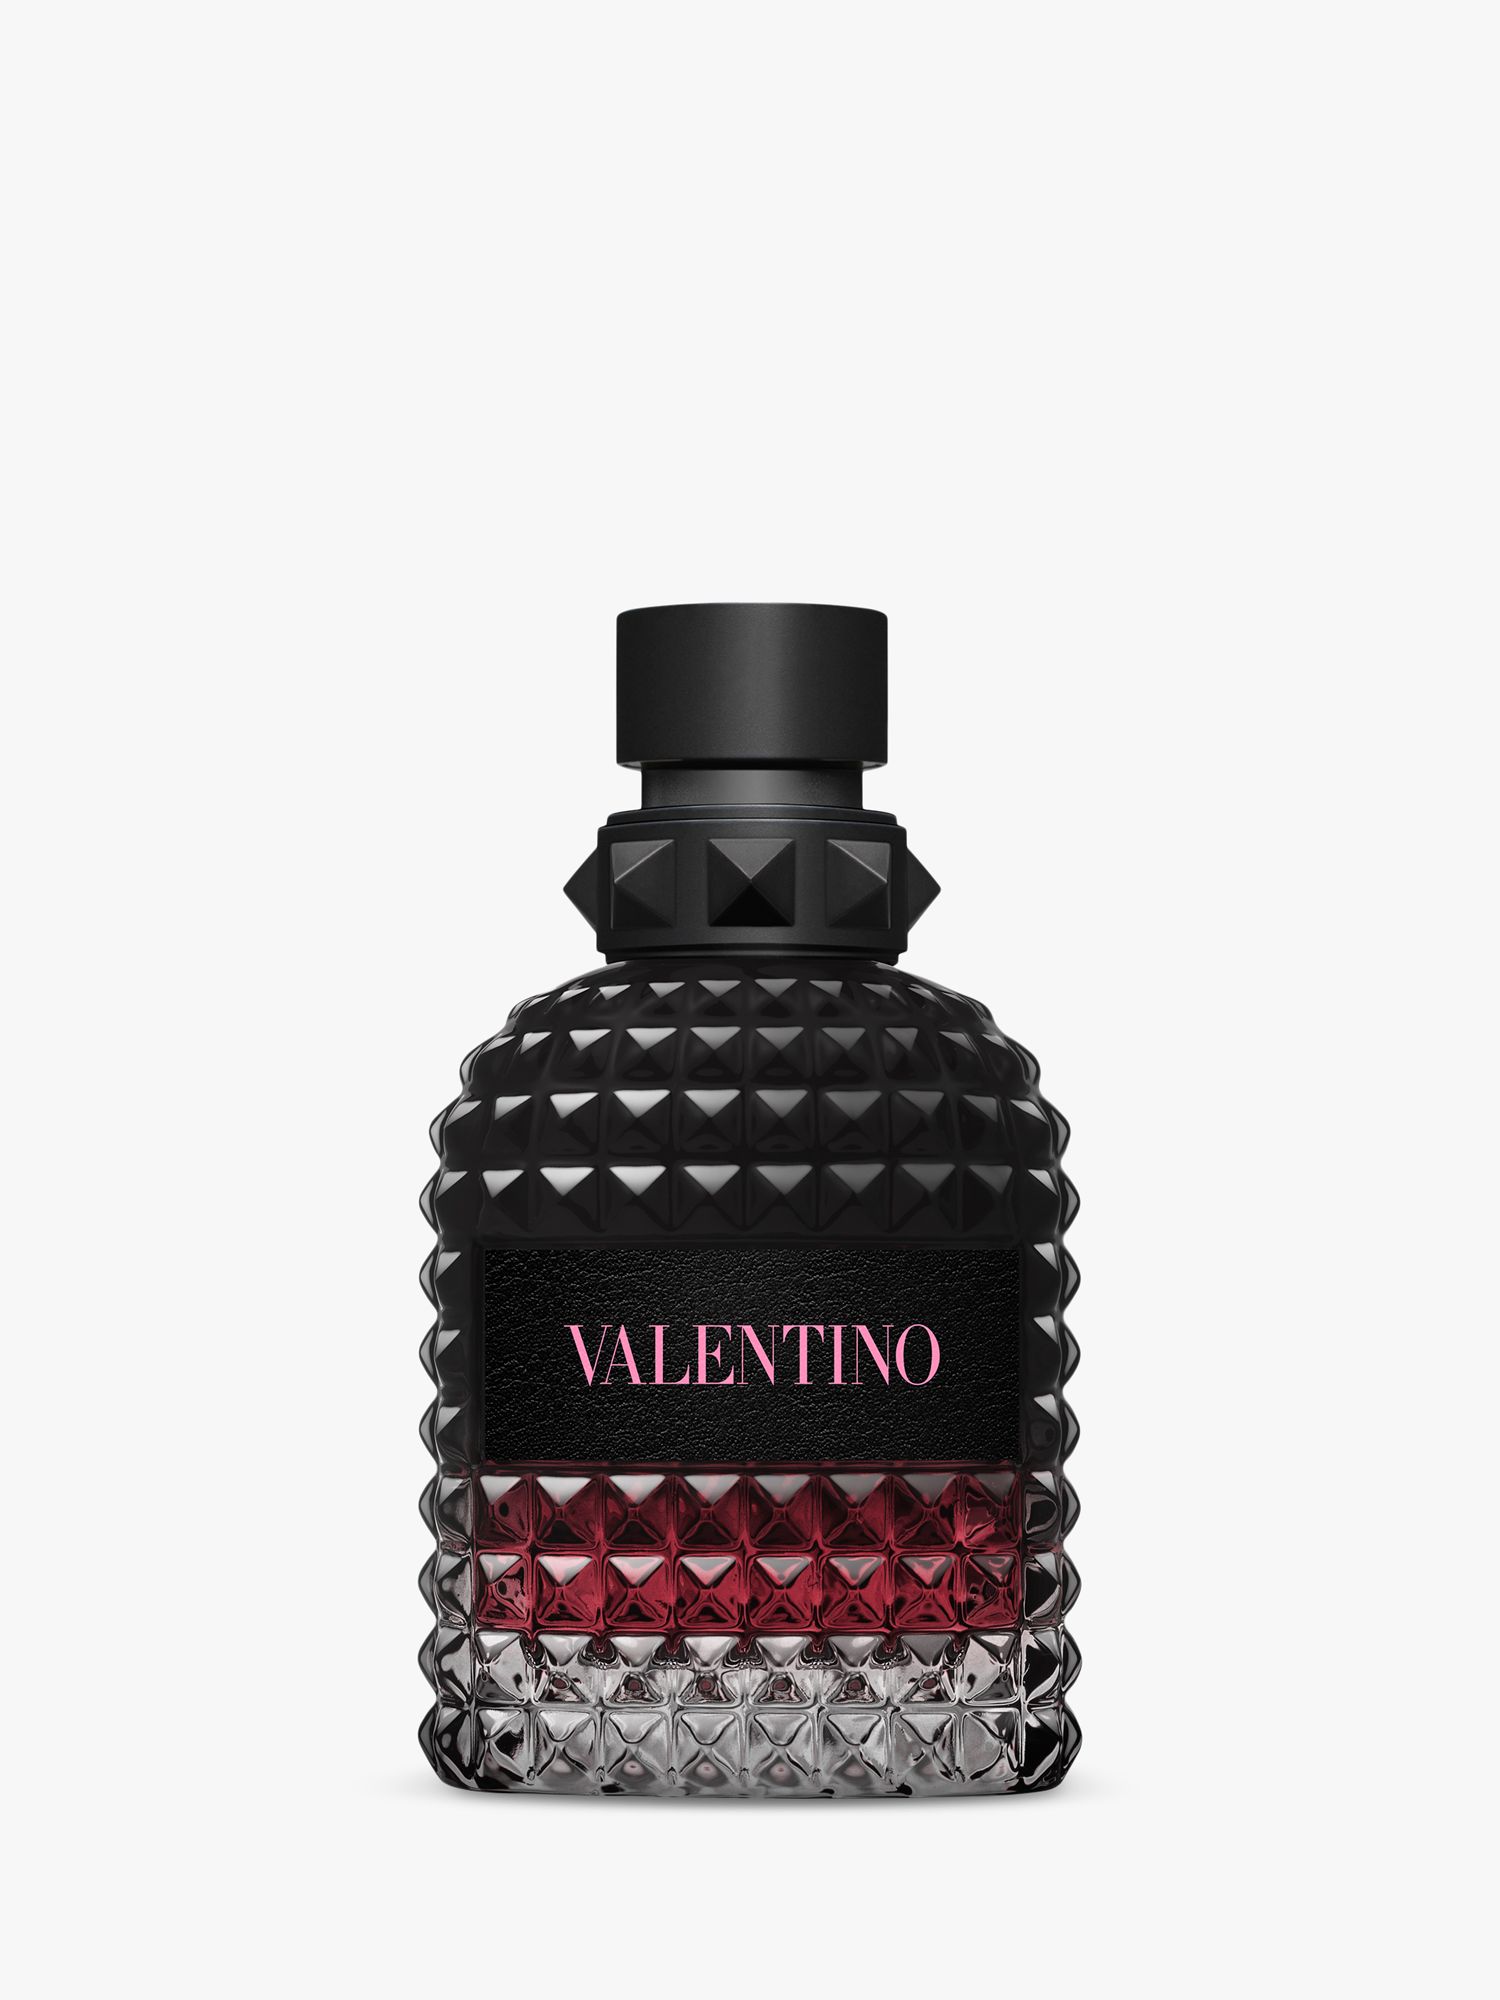 Valentino Born In Roma Uomo Eau de Parfum Intense, 50ml 1